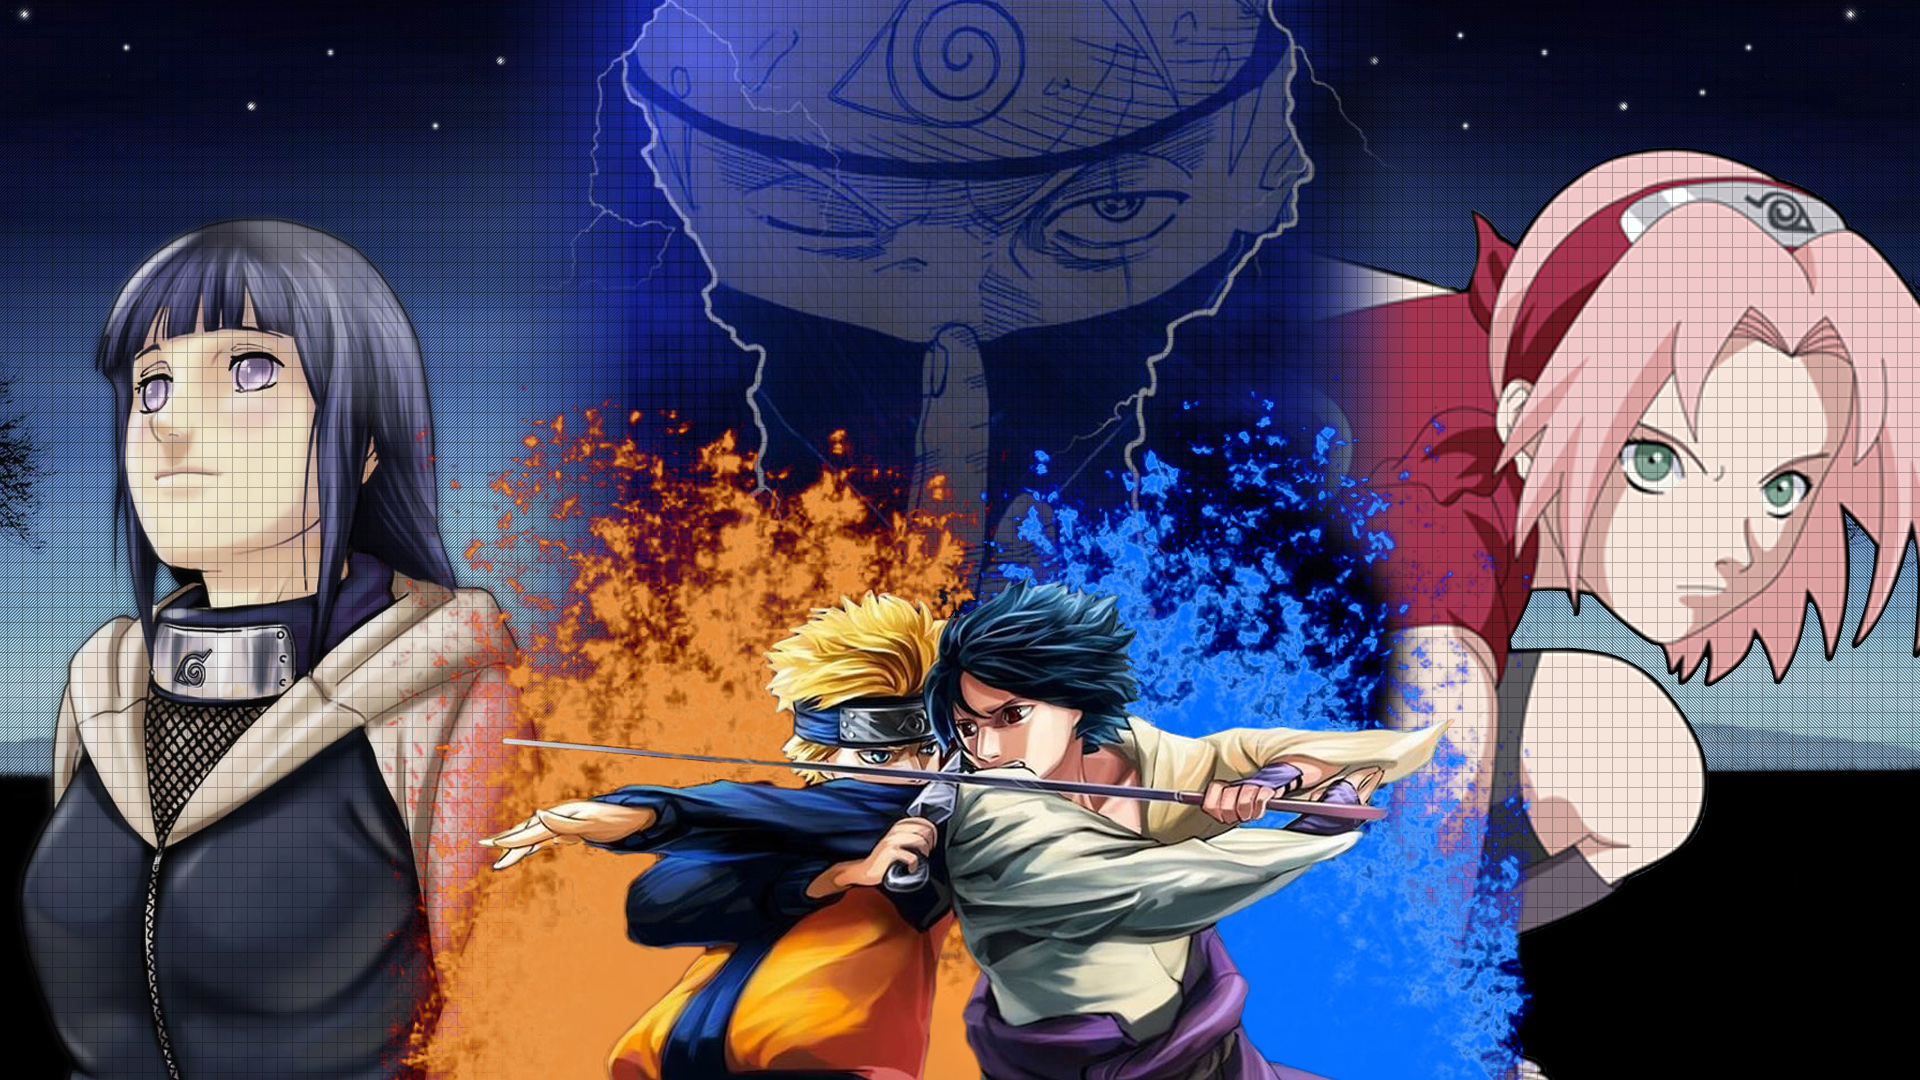 Naruto And Hinata Wallpaper Hdwallpaper
hinata Hyuga - Naruto Sasuke Sakura Kakashi Hinata - HD Wallpaper 